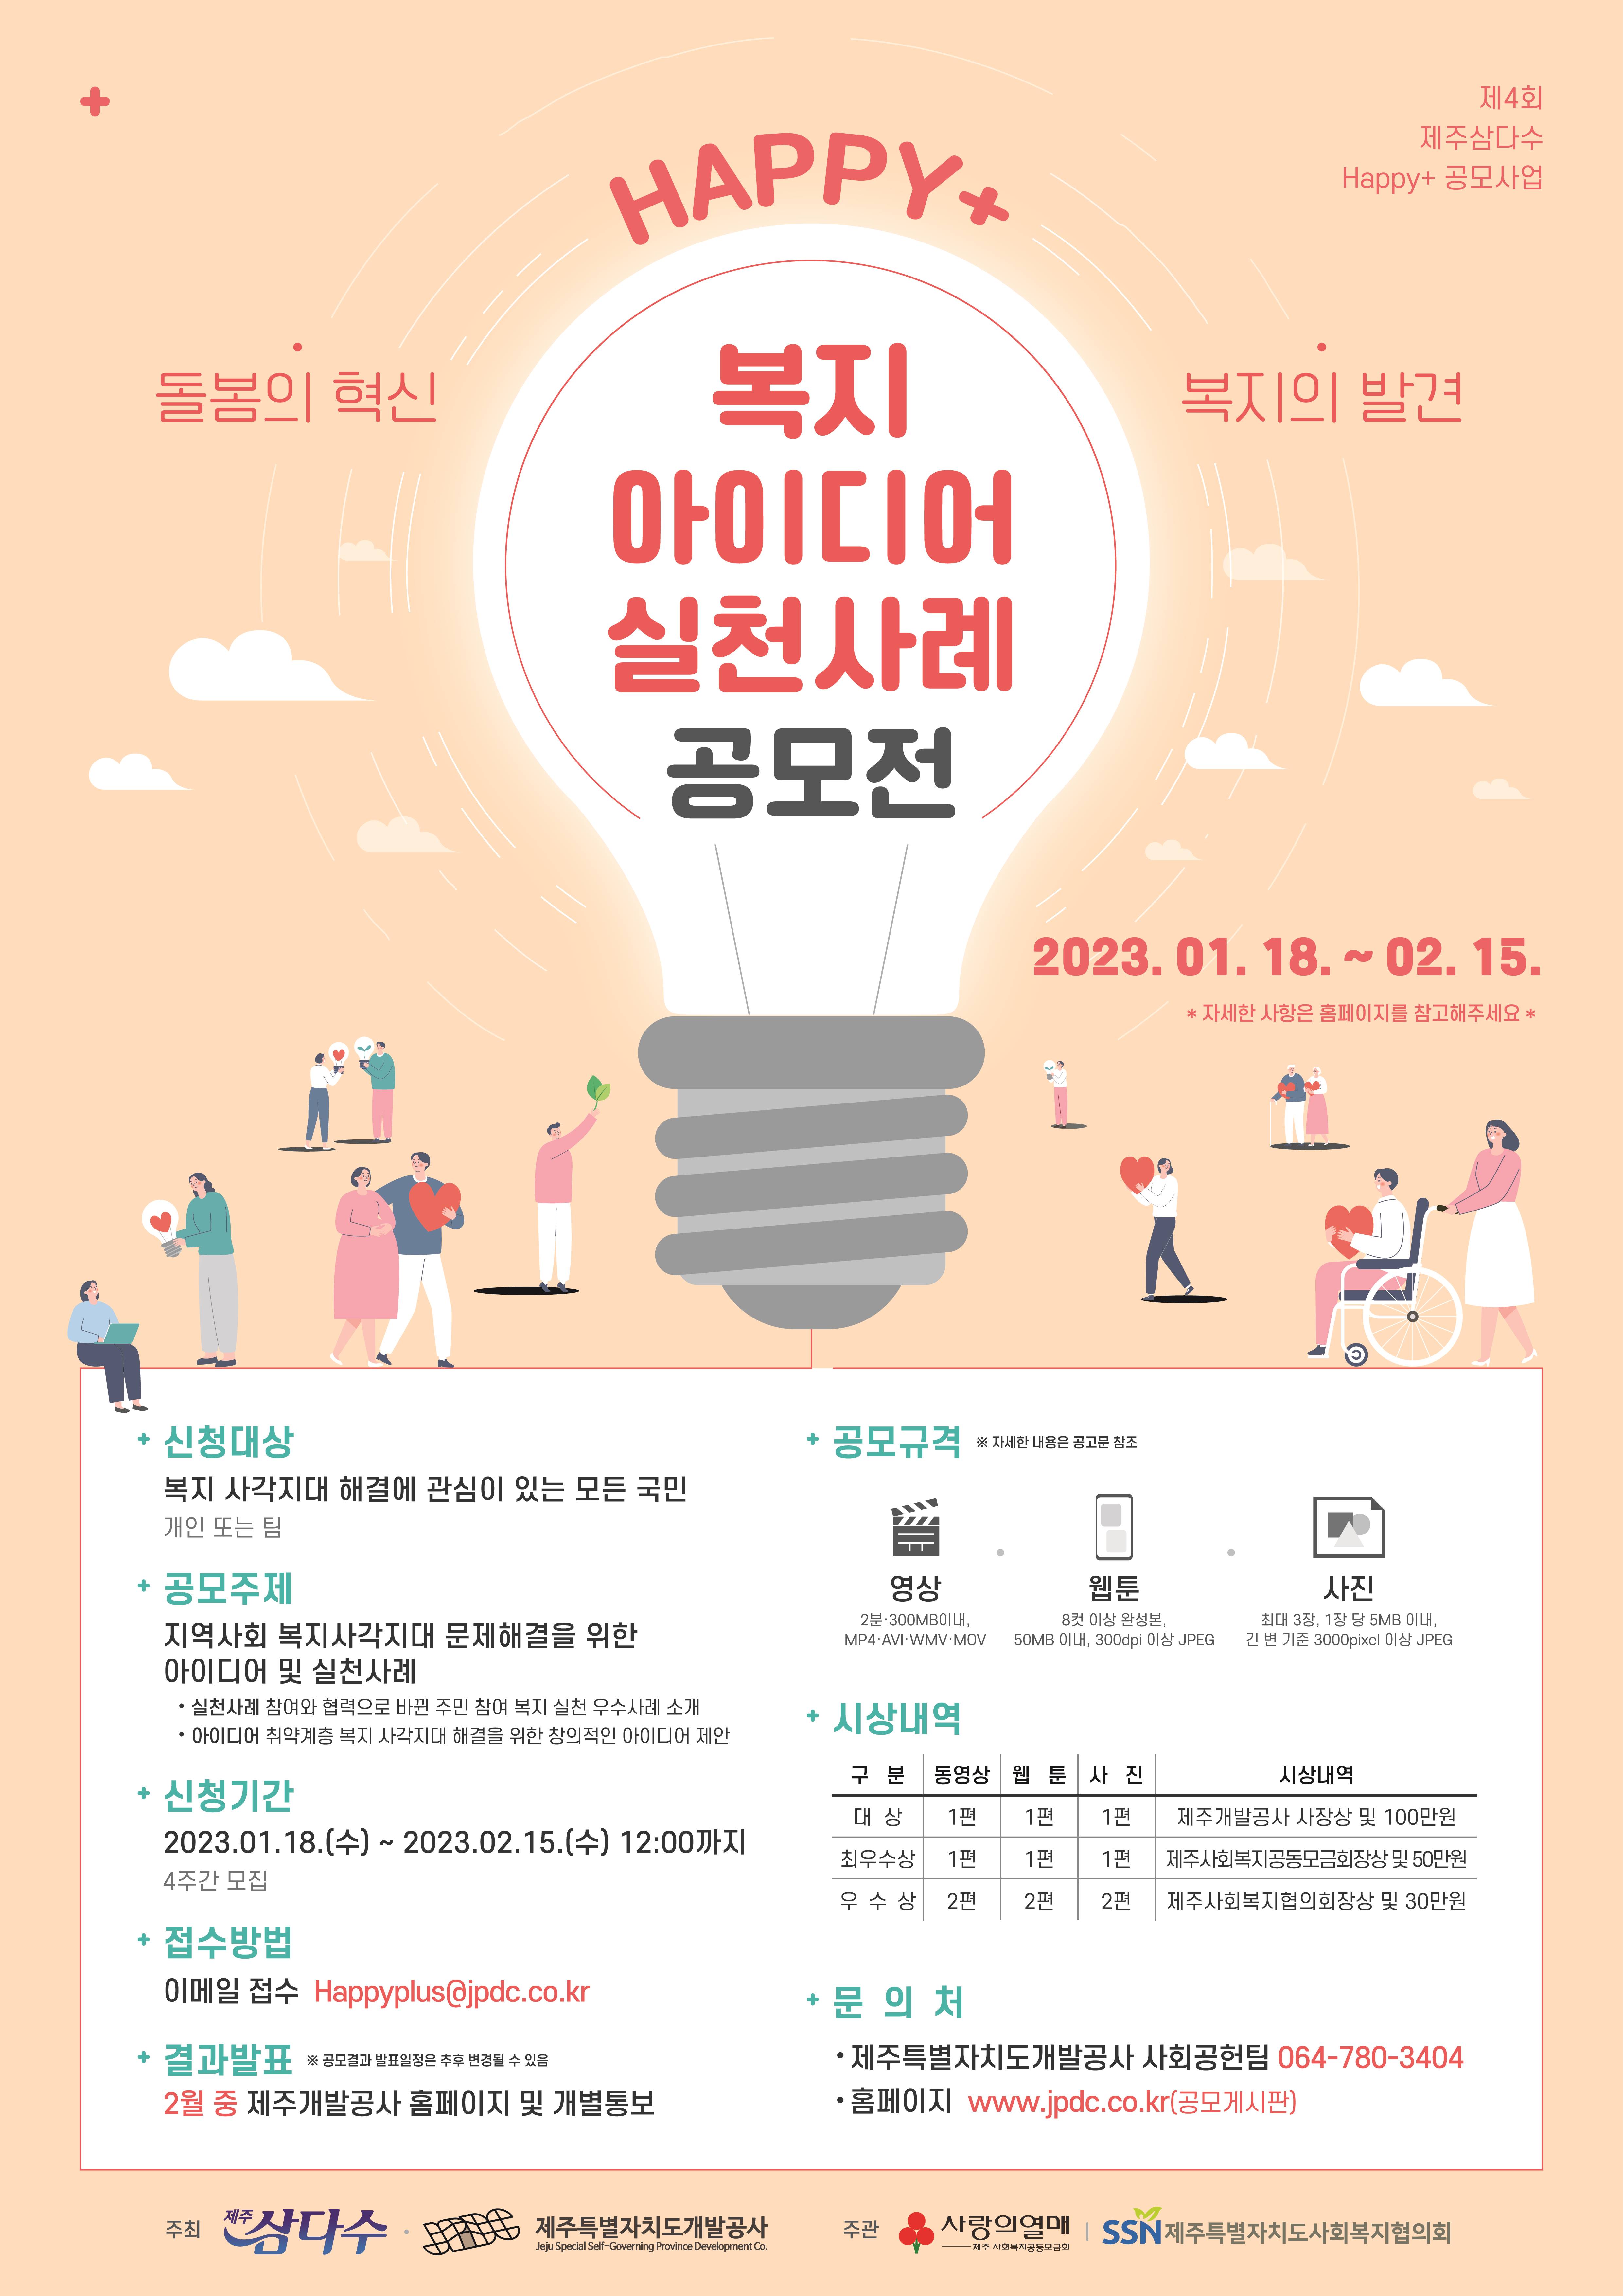 ‘Happy+ 돌봄의 혁신, 복지의 발견’ 복지 아이디어 실천사례 공모전 안내 포스터